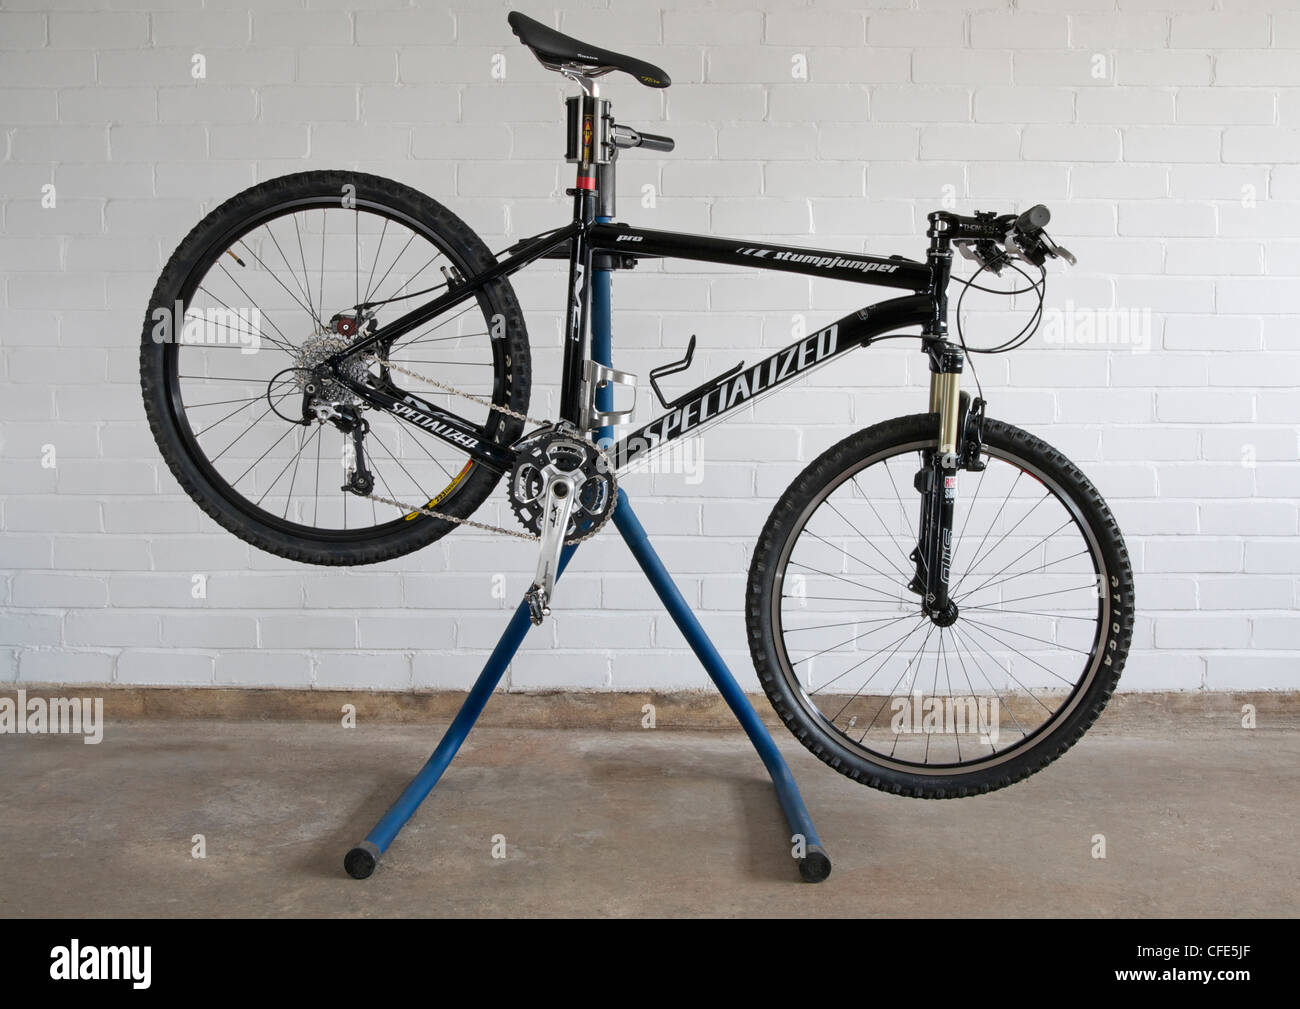 Mountainbike auf Arbeit Fahrradständer gegen Mauer Stockfotografie - Alamy